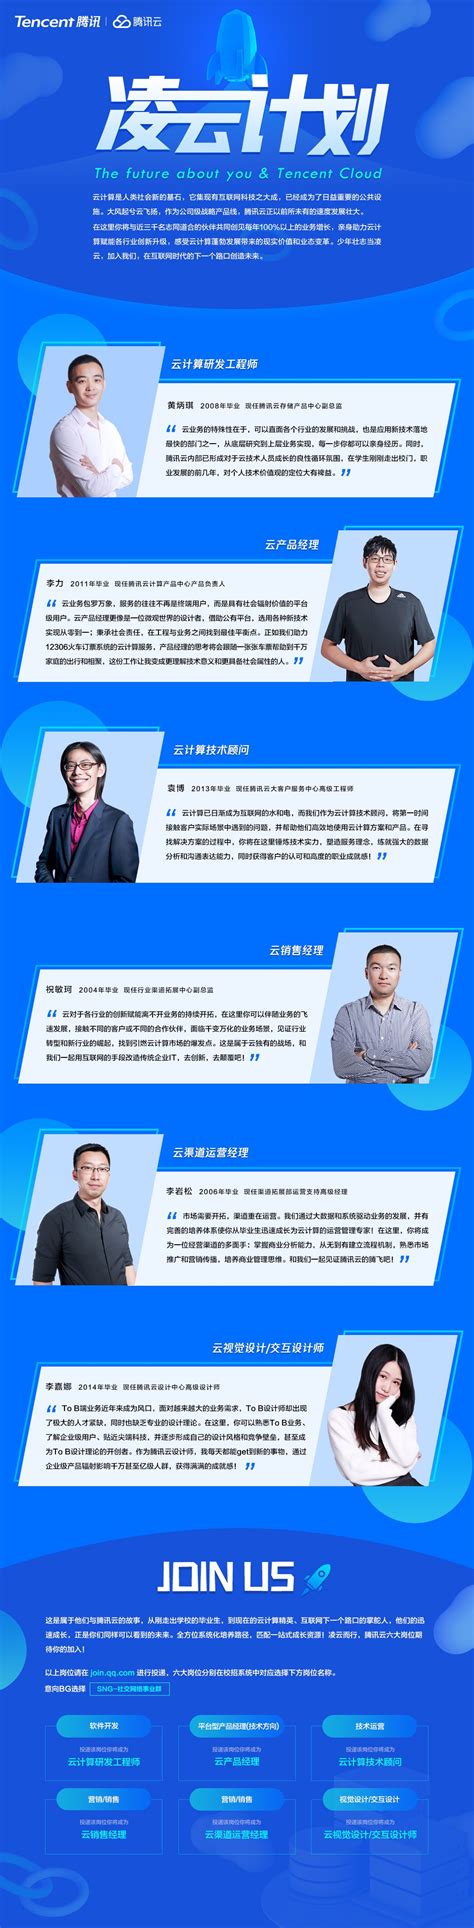 腾讯2018实习生招聘“凌云计划”启动 -- 校招动态 | Tencent 校园招聘